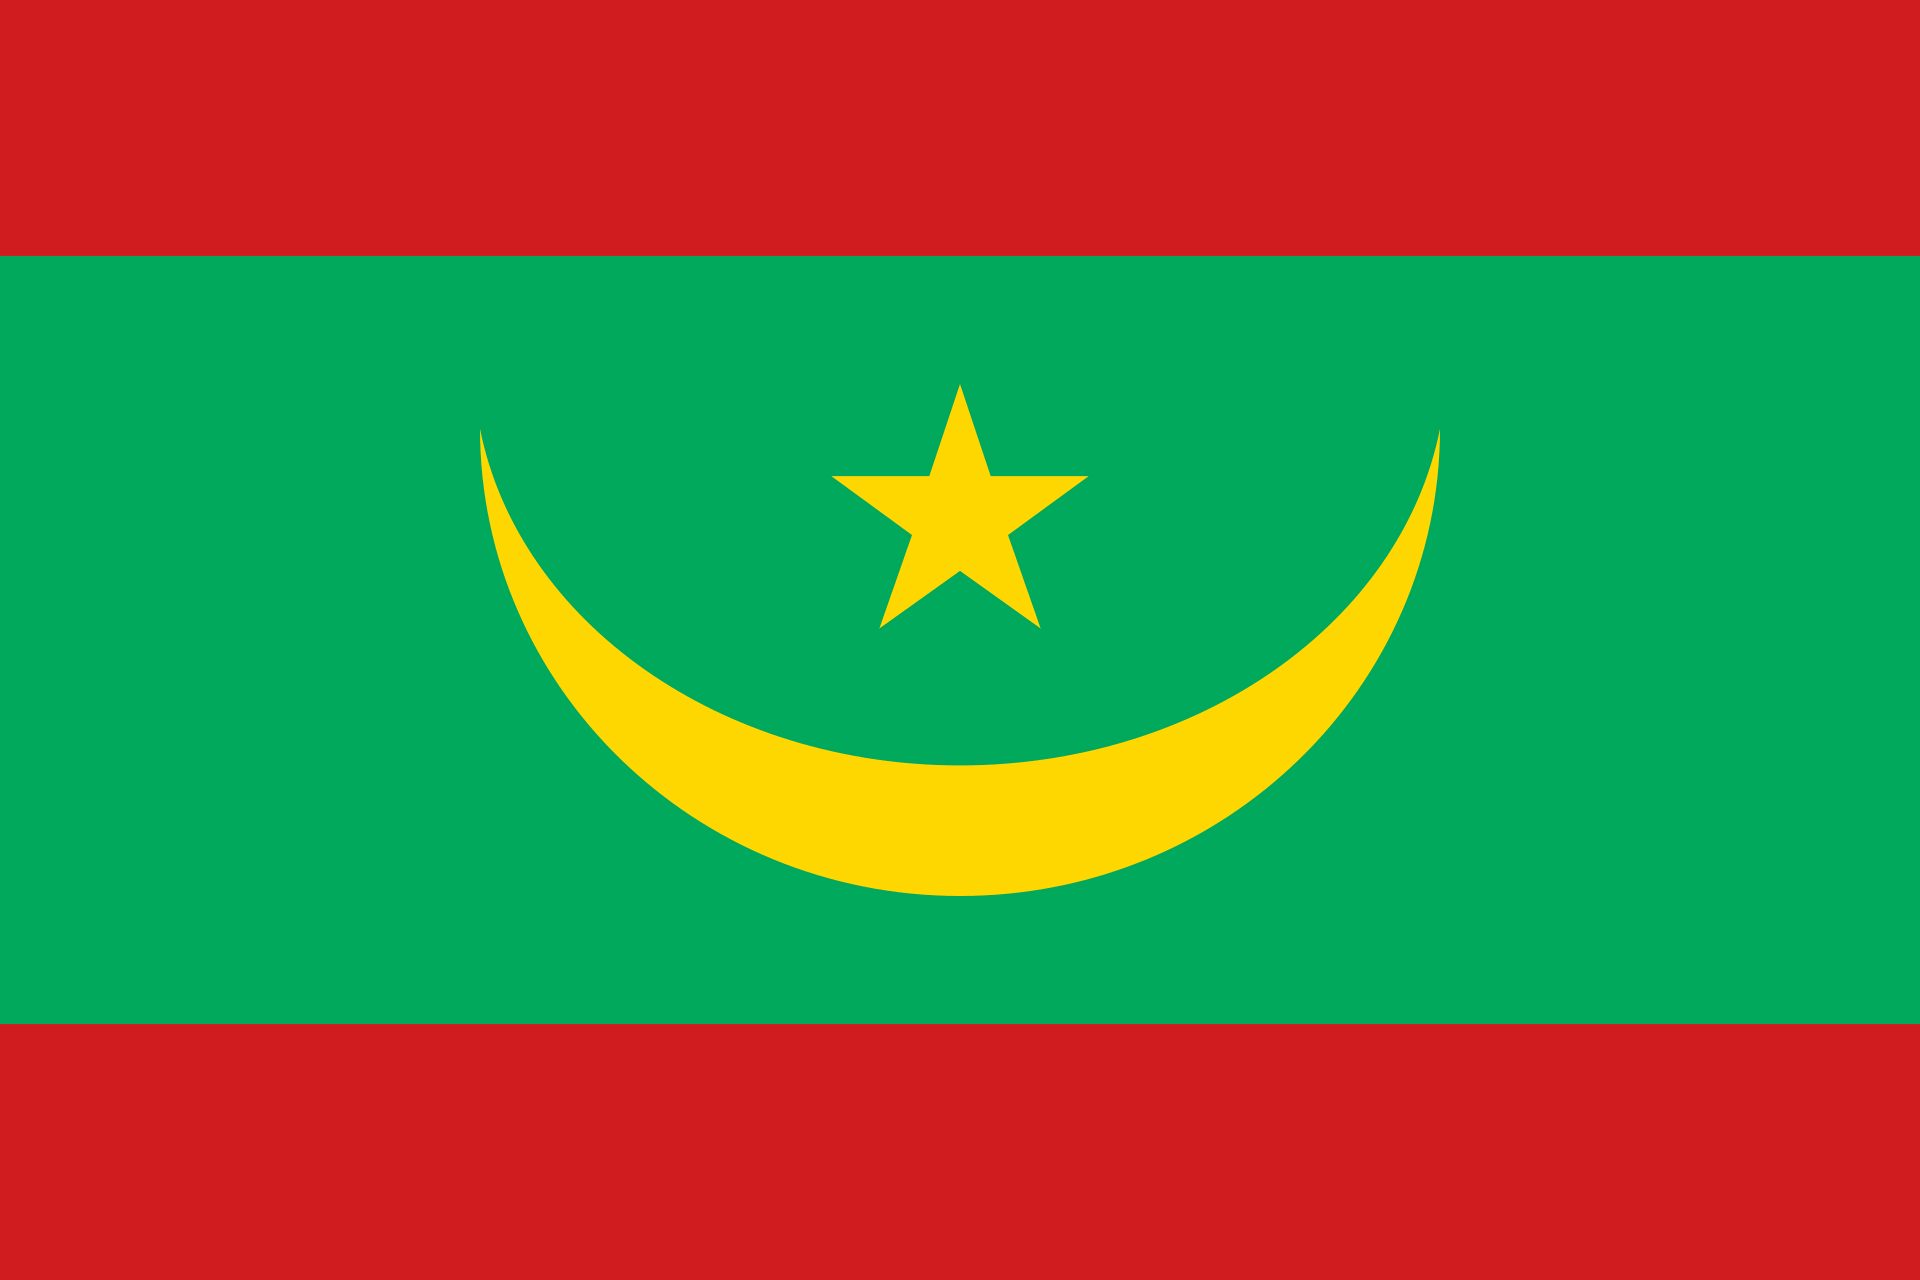 モーリタニアの旗